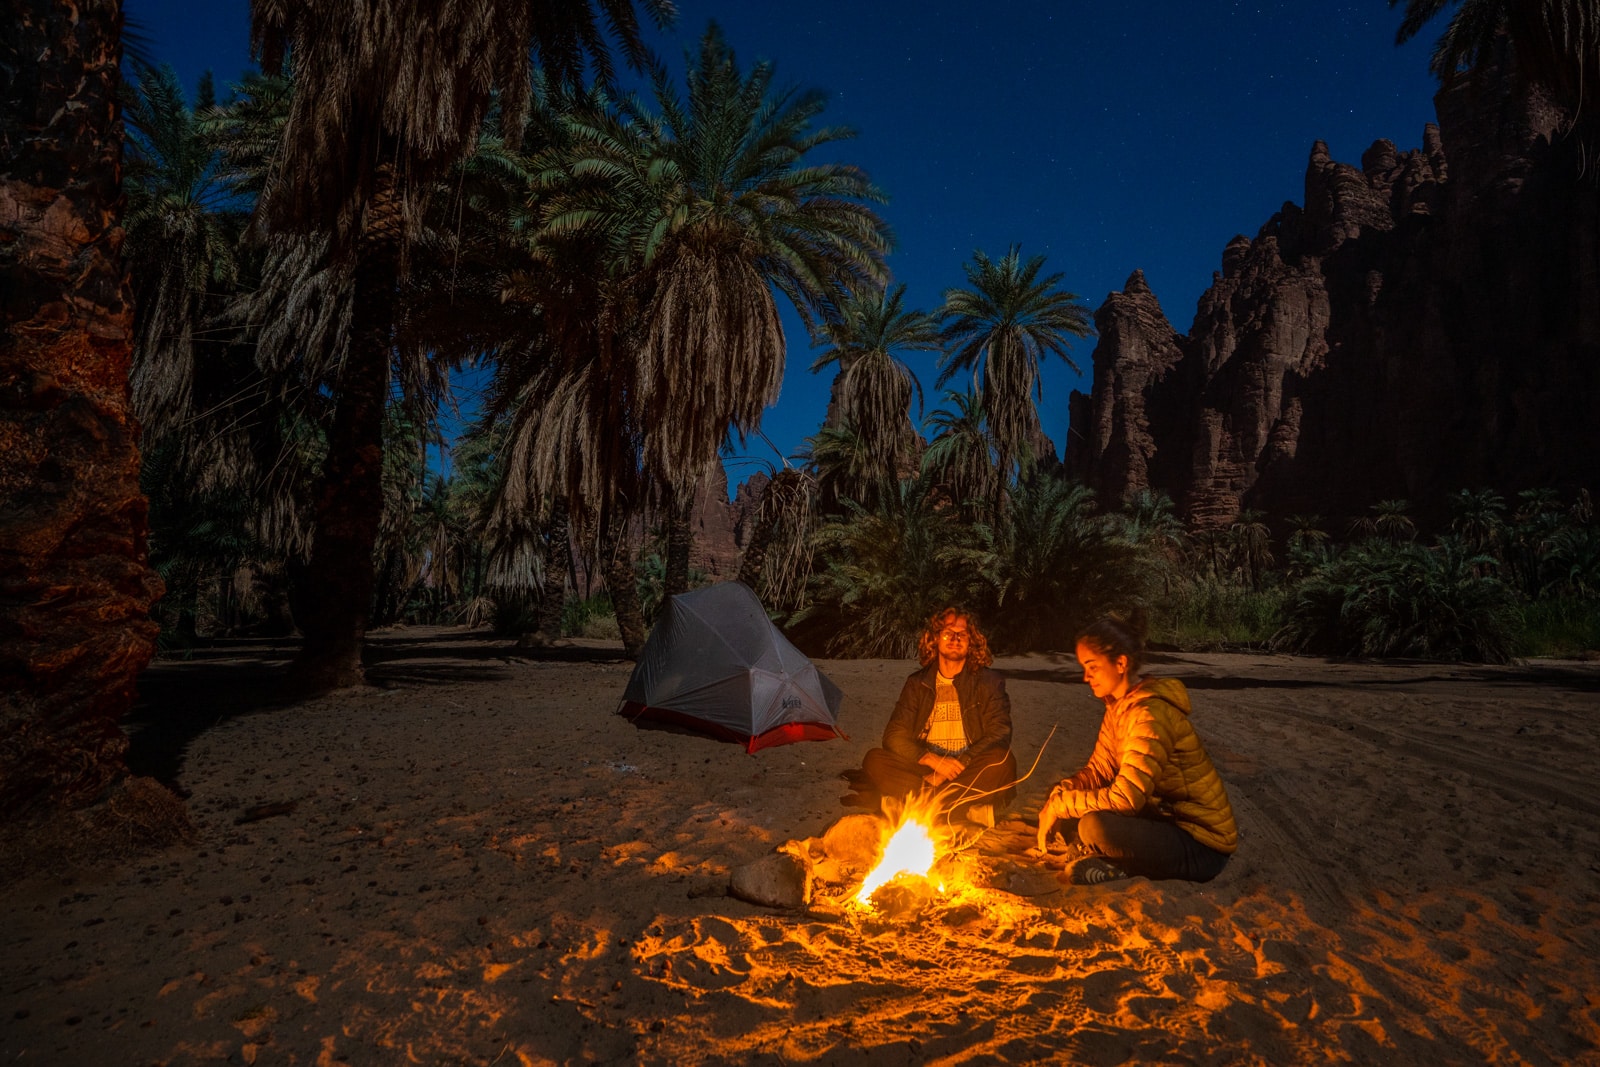 Two travelers at a campfire in Wadi Disah, Saudi Arabia